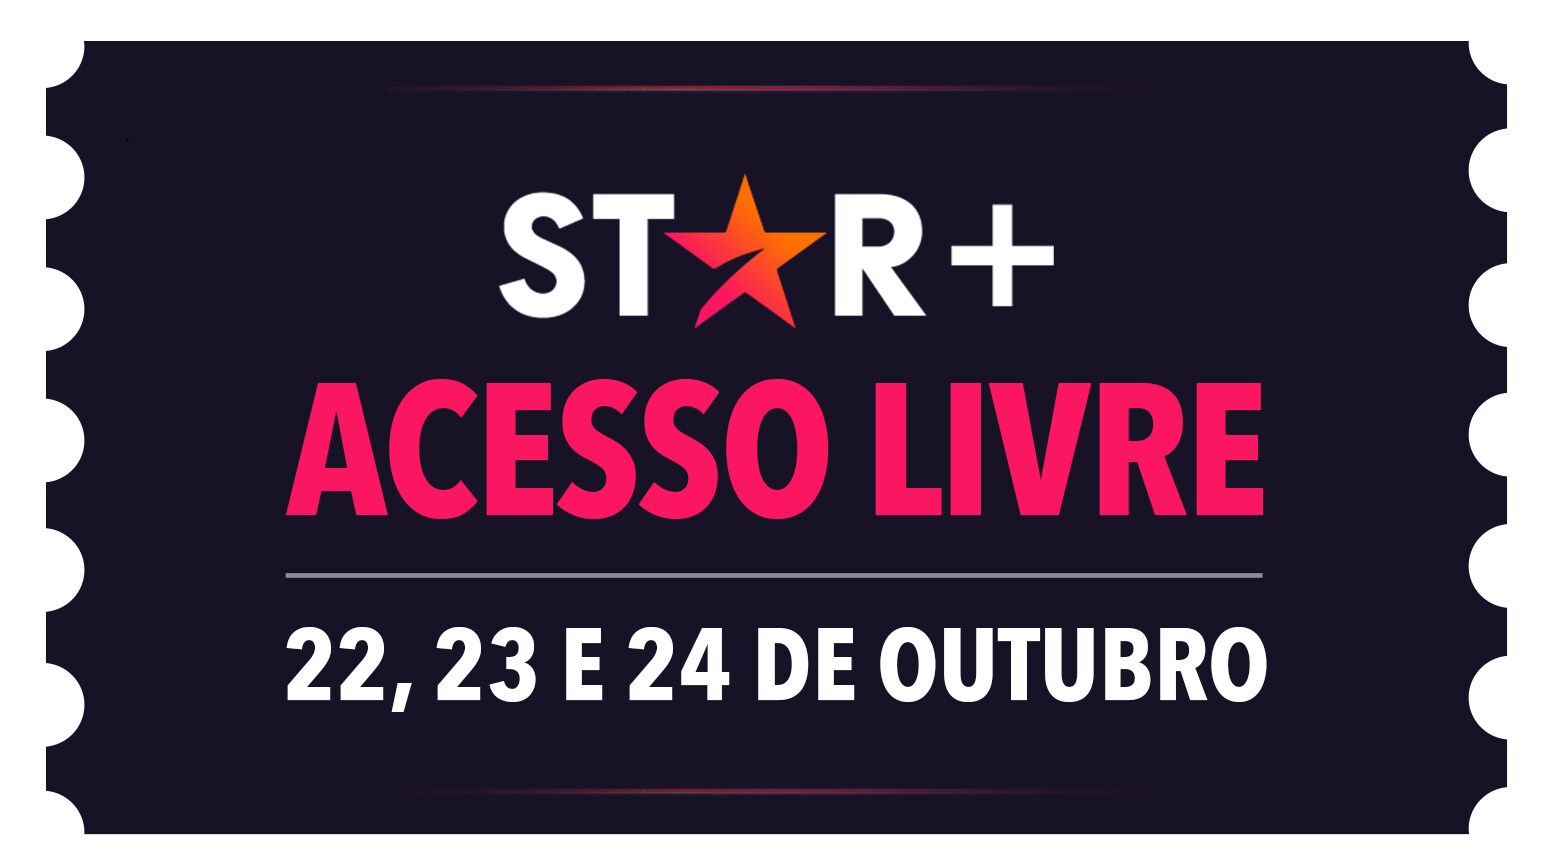 Chega o Star+ Acesso Livre, a promoção que dá às novas assinaturas 3 dias de acesso ilimitado ao Star+ sem cobrança